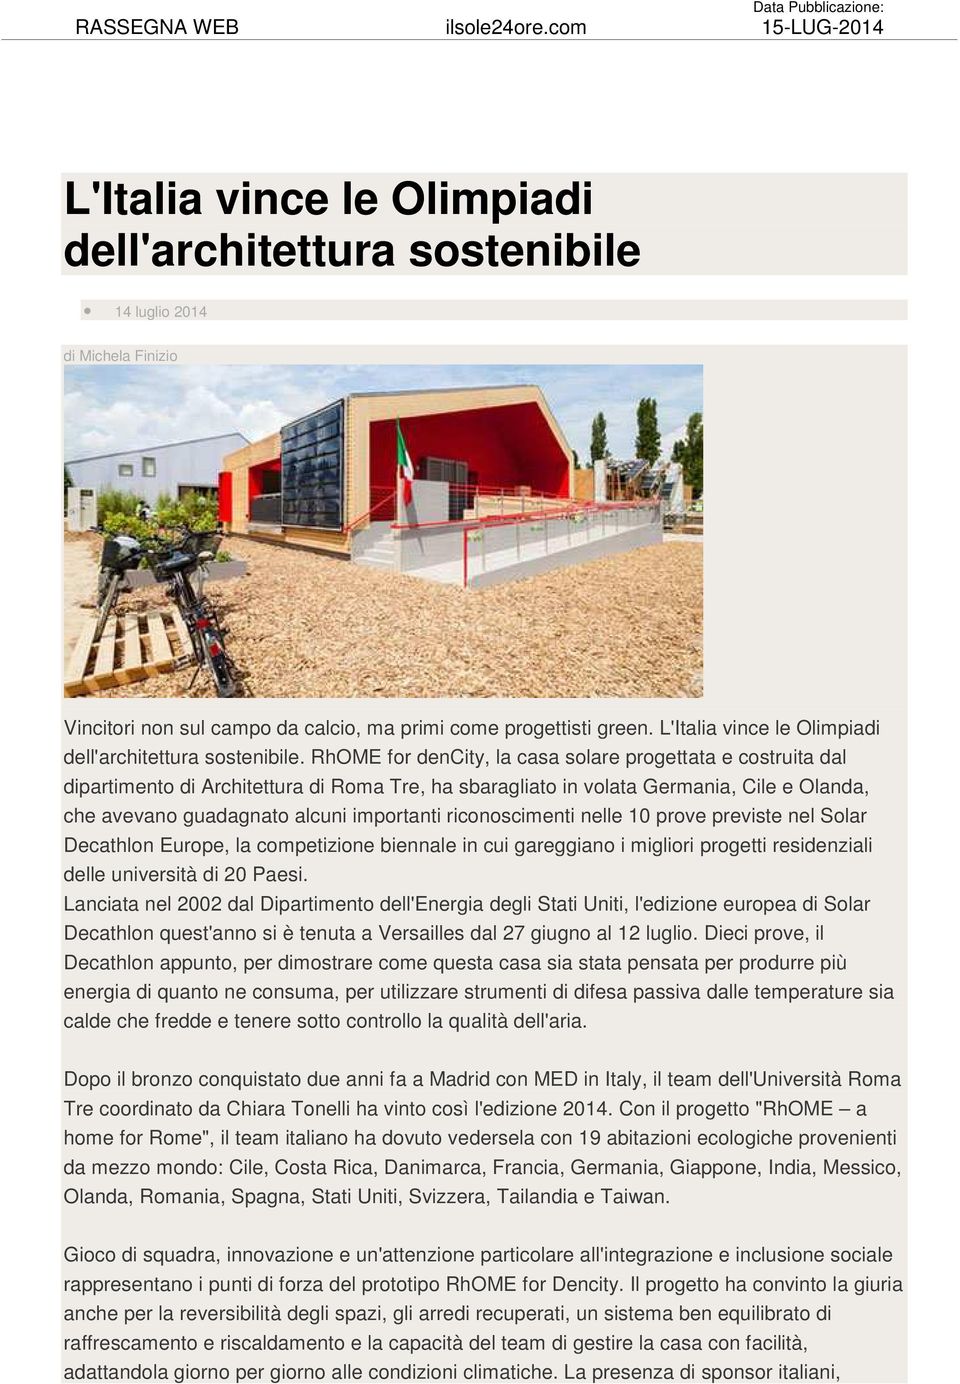 L'Italia vince le Olimpiadi dell'architettura sostenibile.